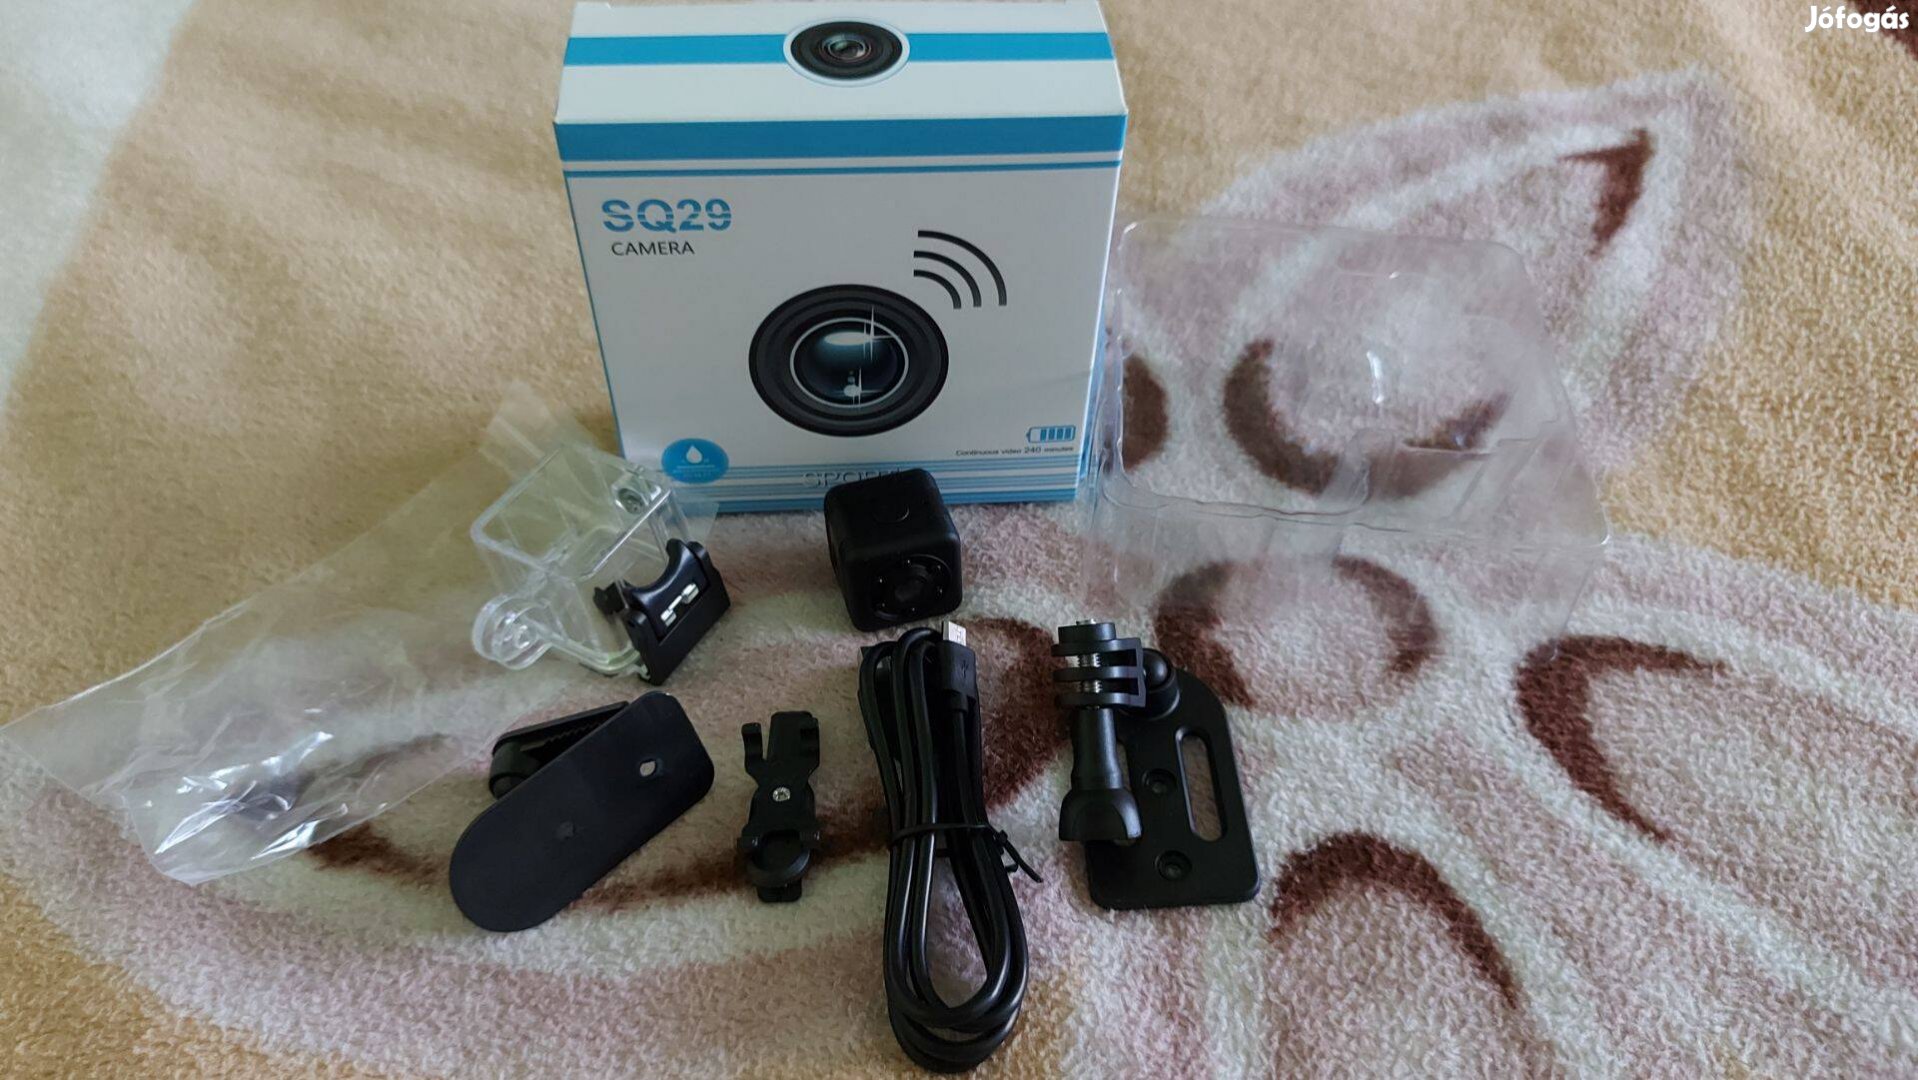 SQ29 camera mini sport kamera